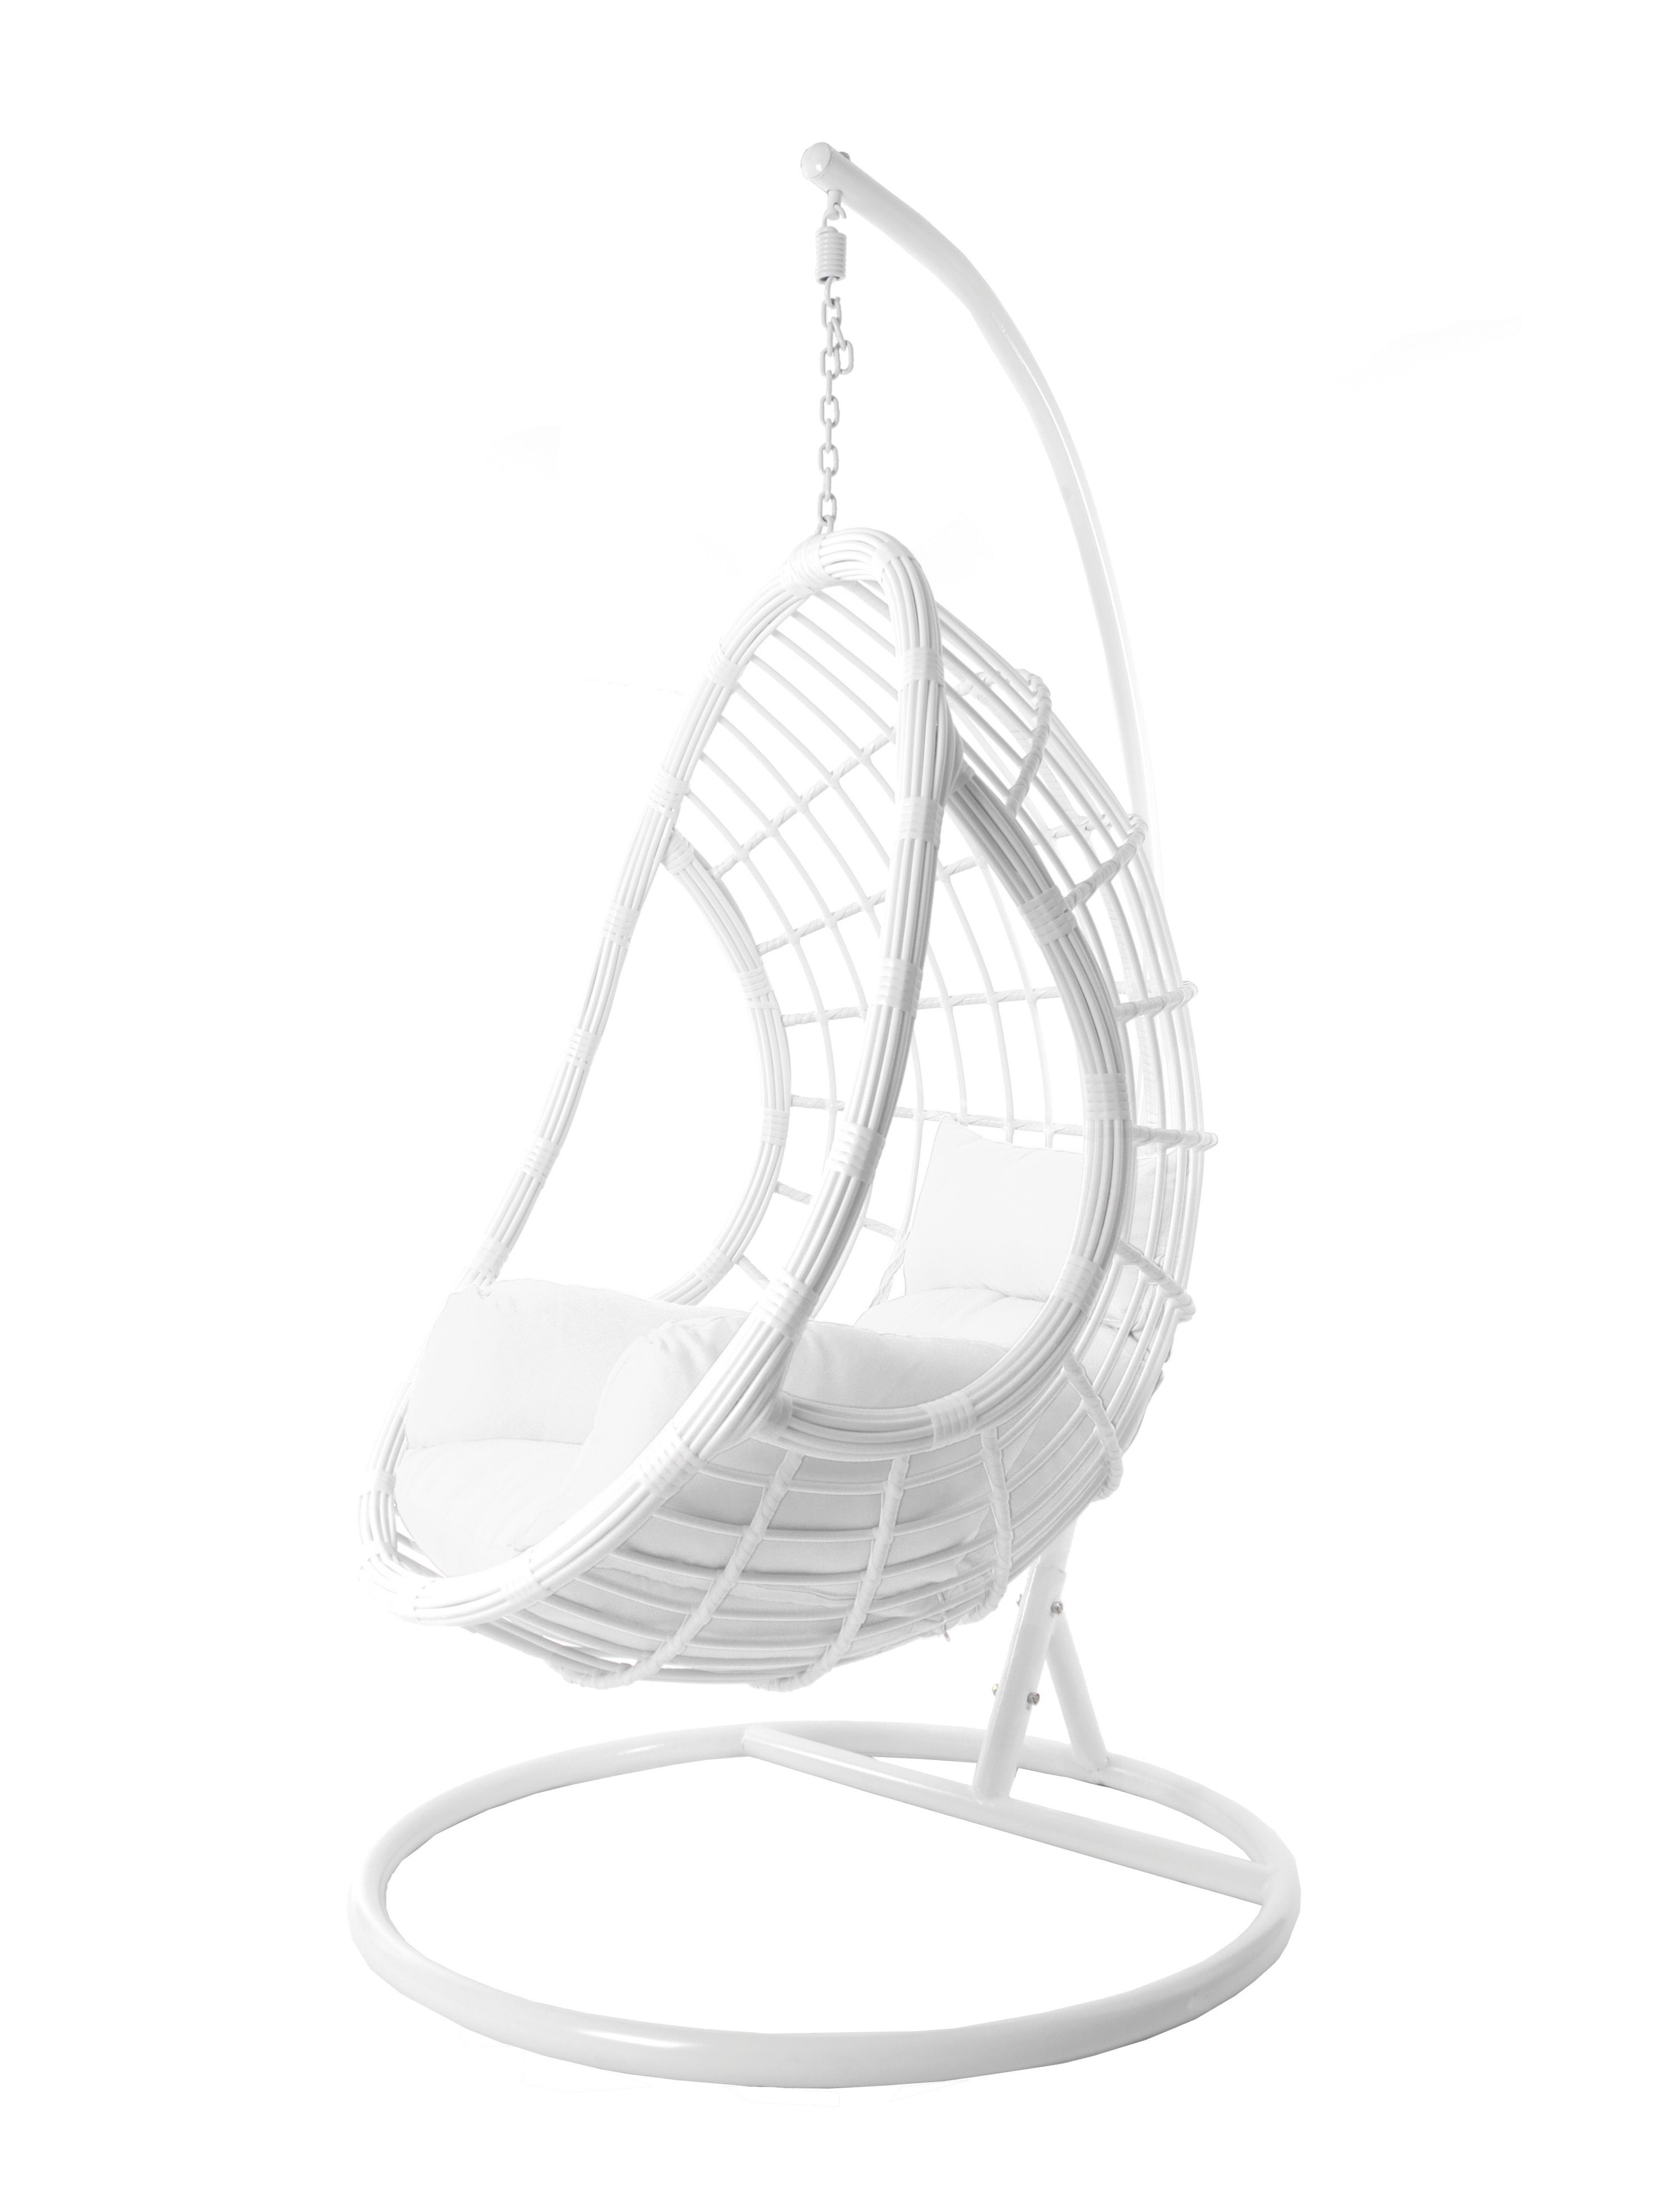 KIDEO Hängesessel Loungesessel weiß, in weiß, moderner und PALMANOVA Loungemöbel Hängesessel Swing Gestell Chair, mit Hängesessel Kissen